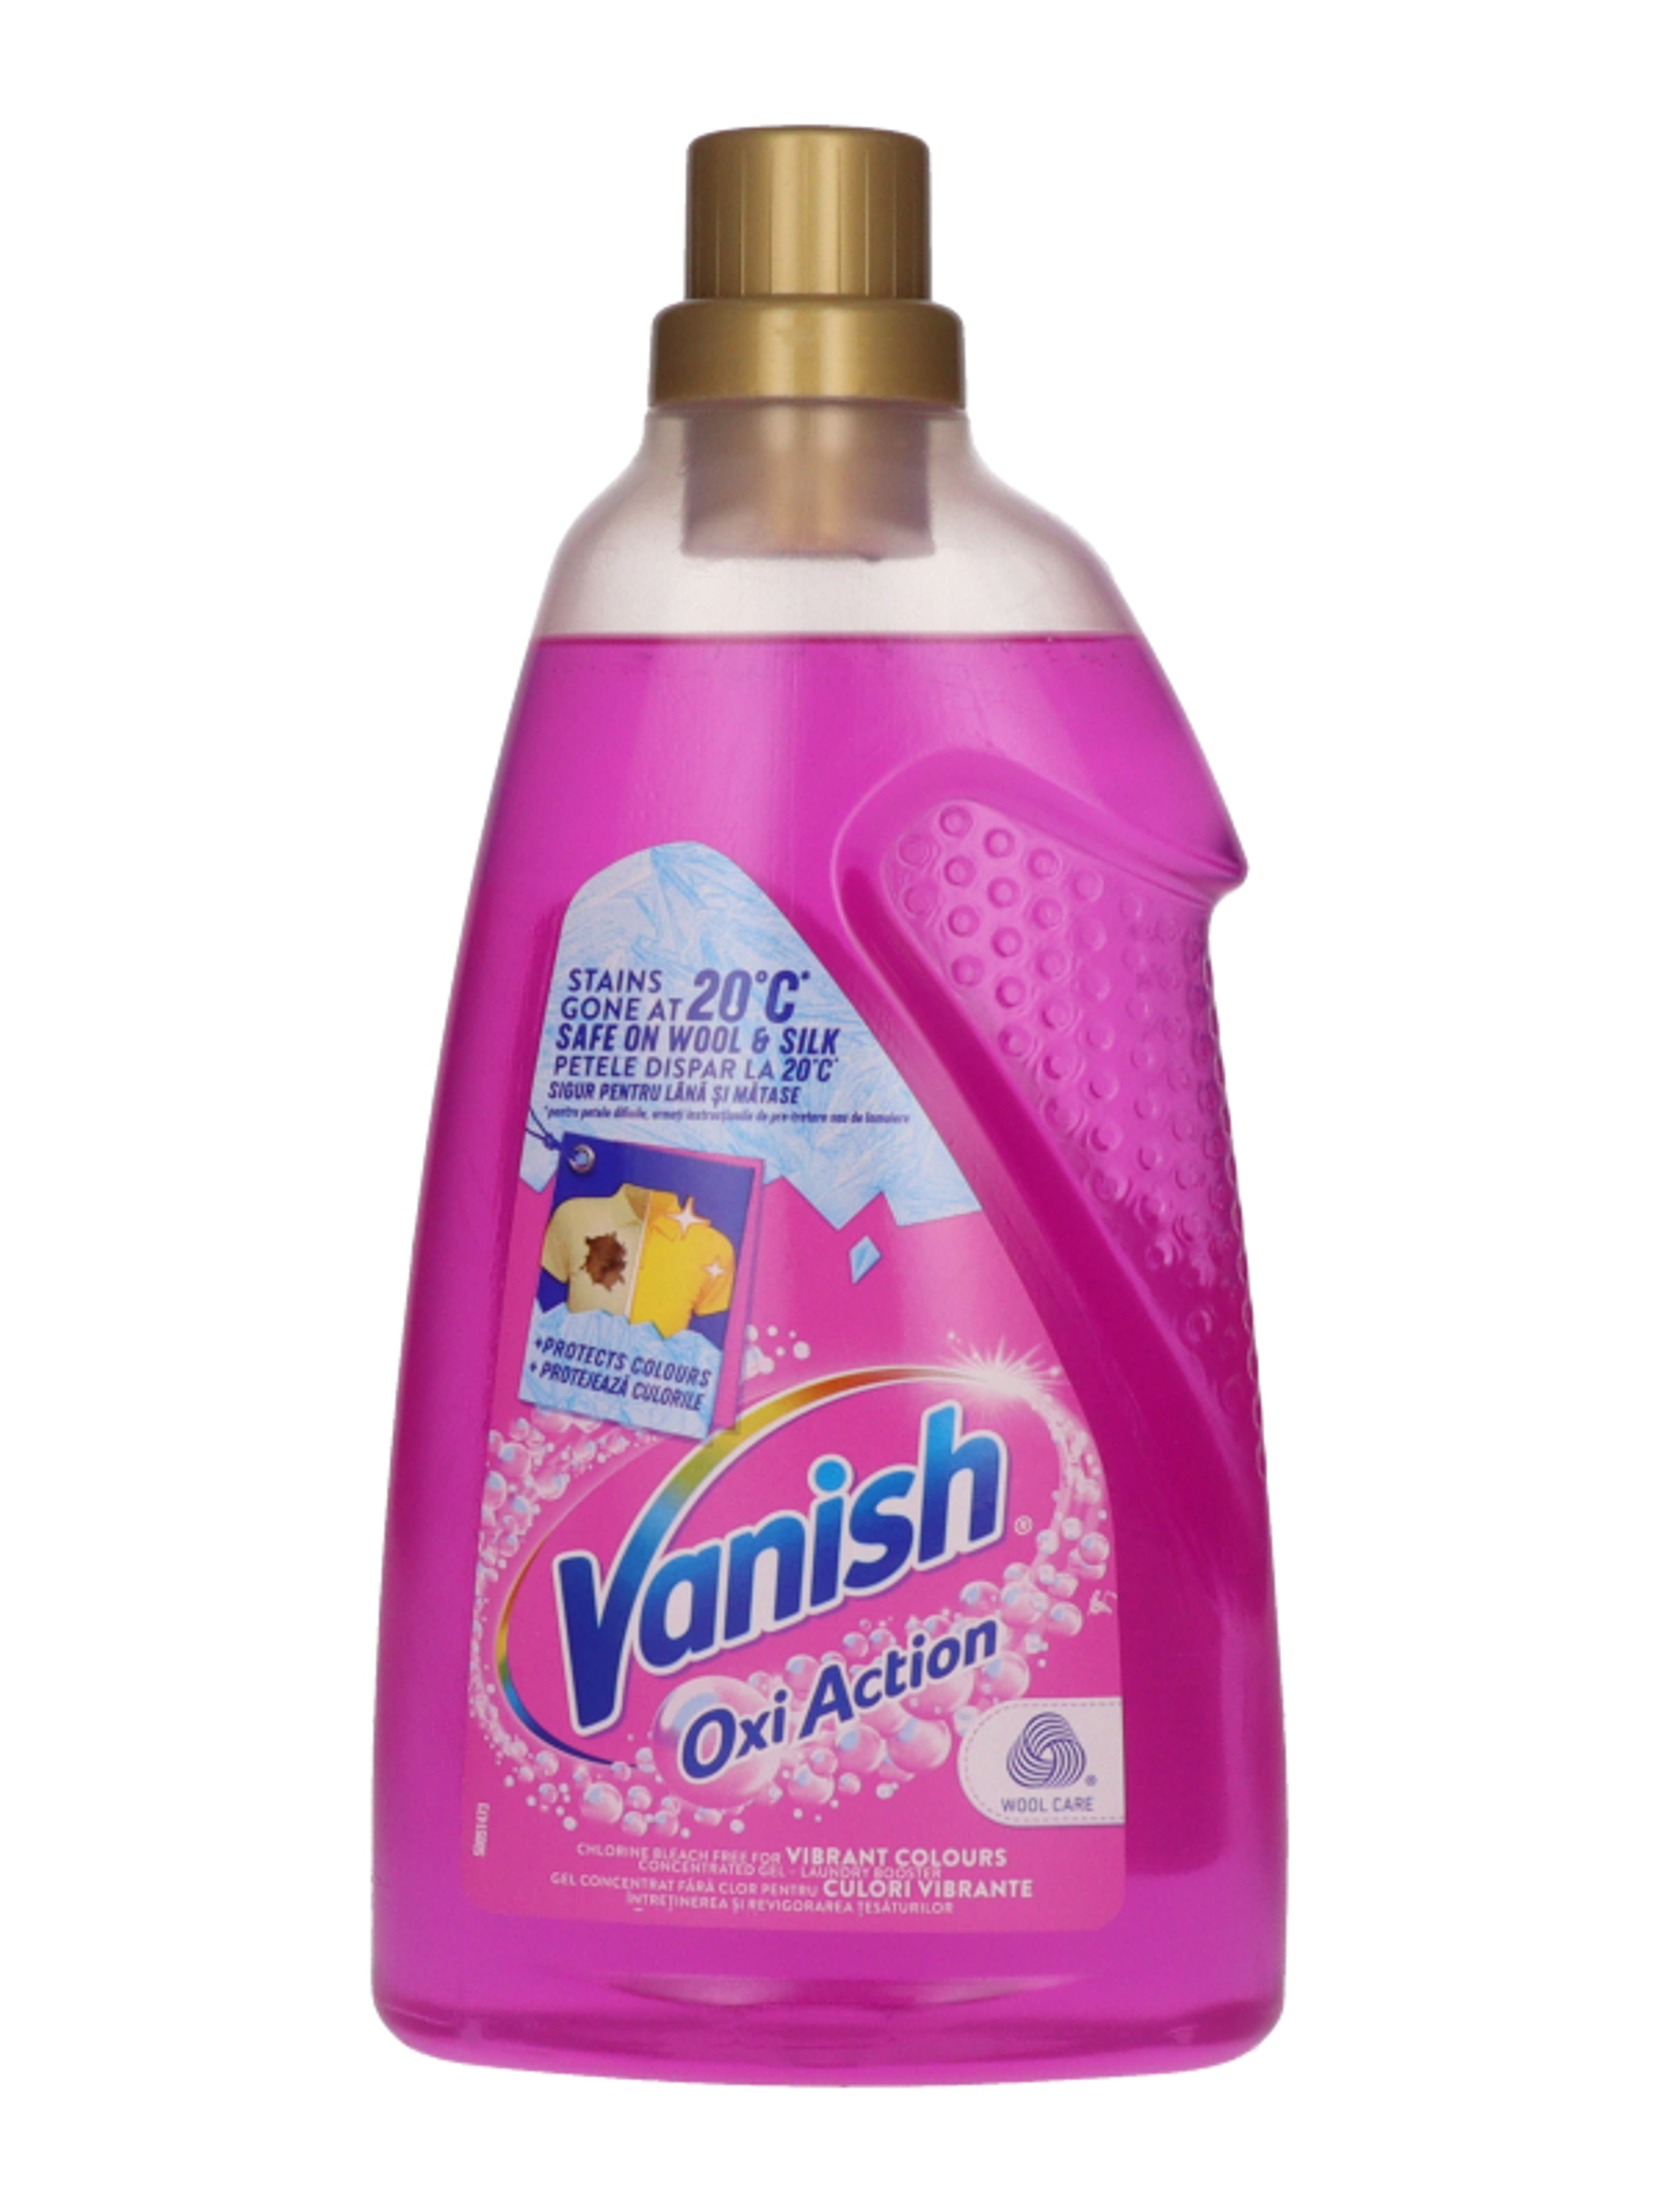 Vanish Oxi Action folteltávolító gél koncentrátum - 1500 ml